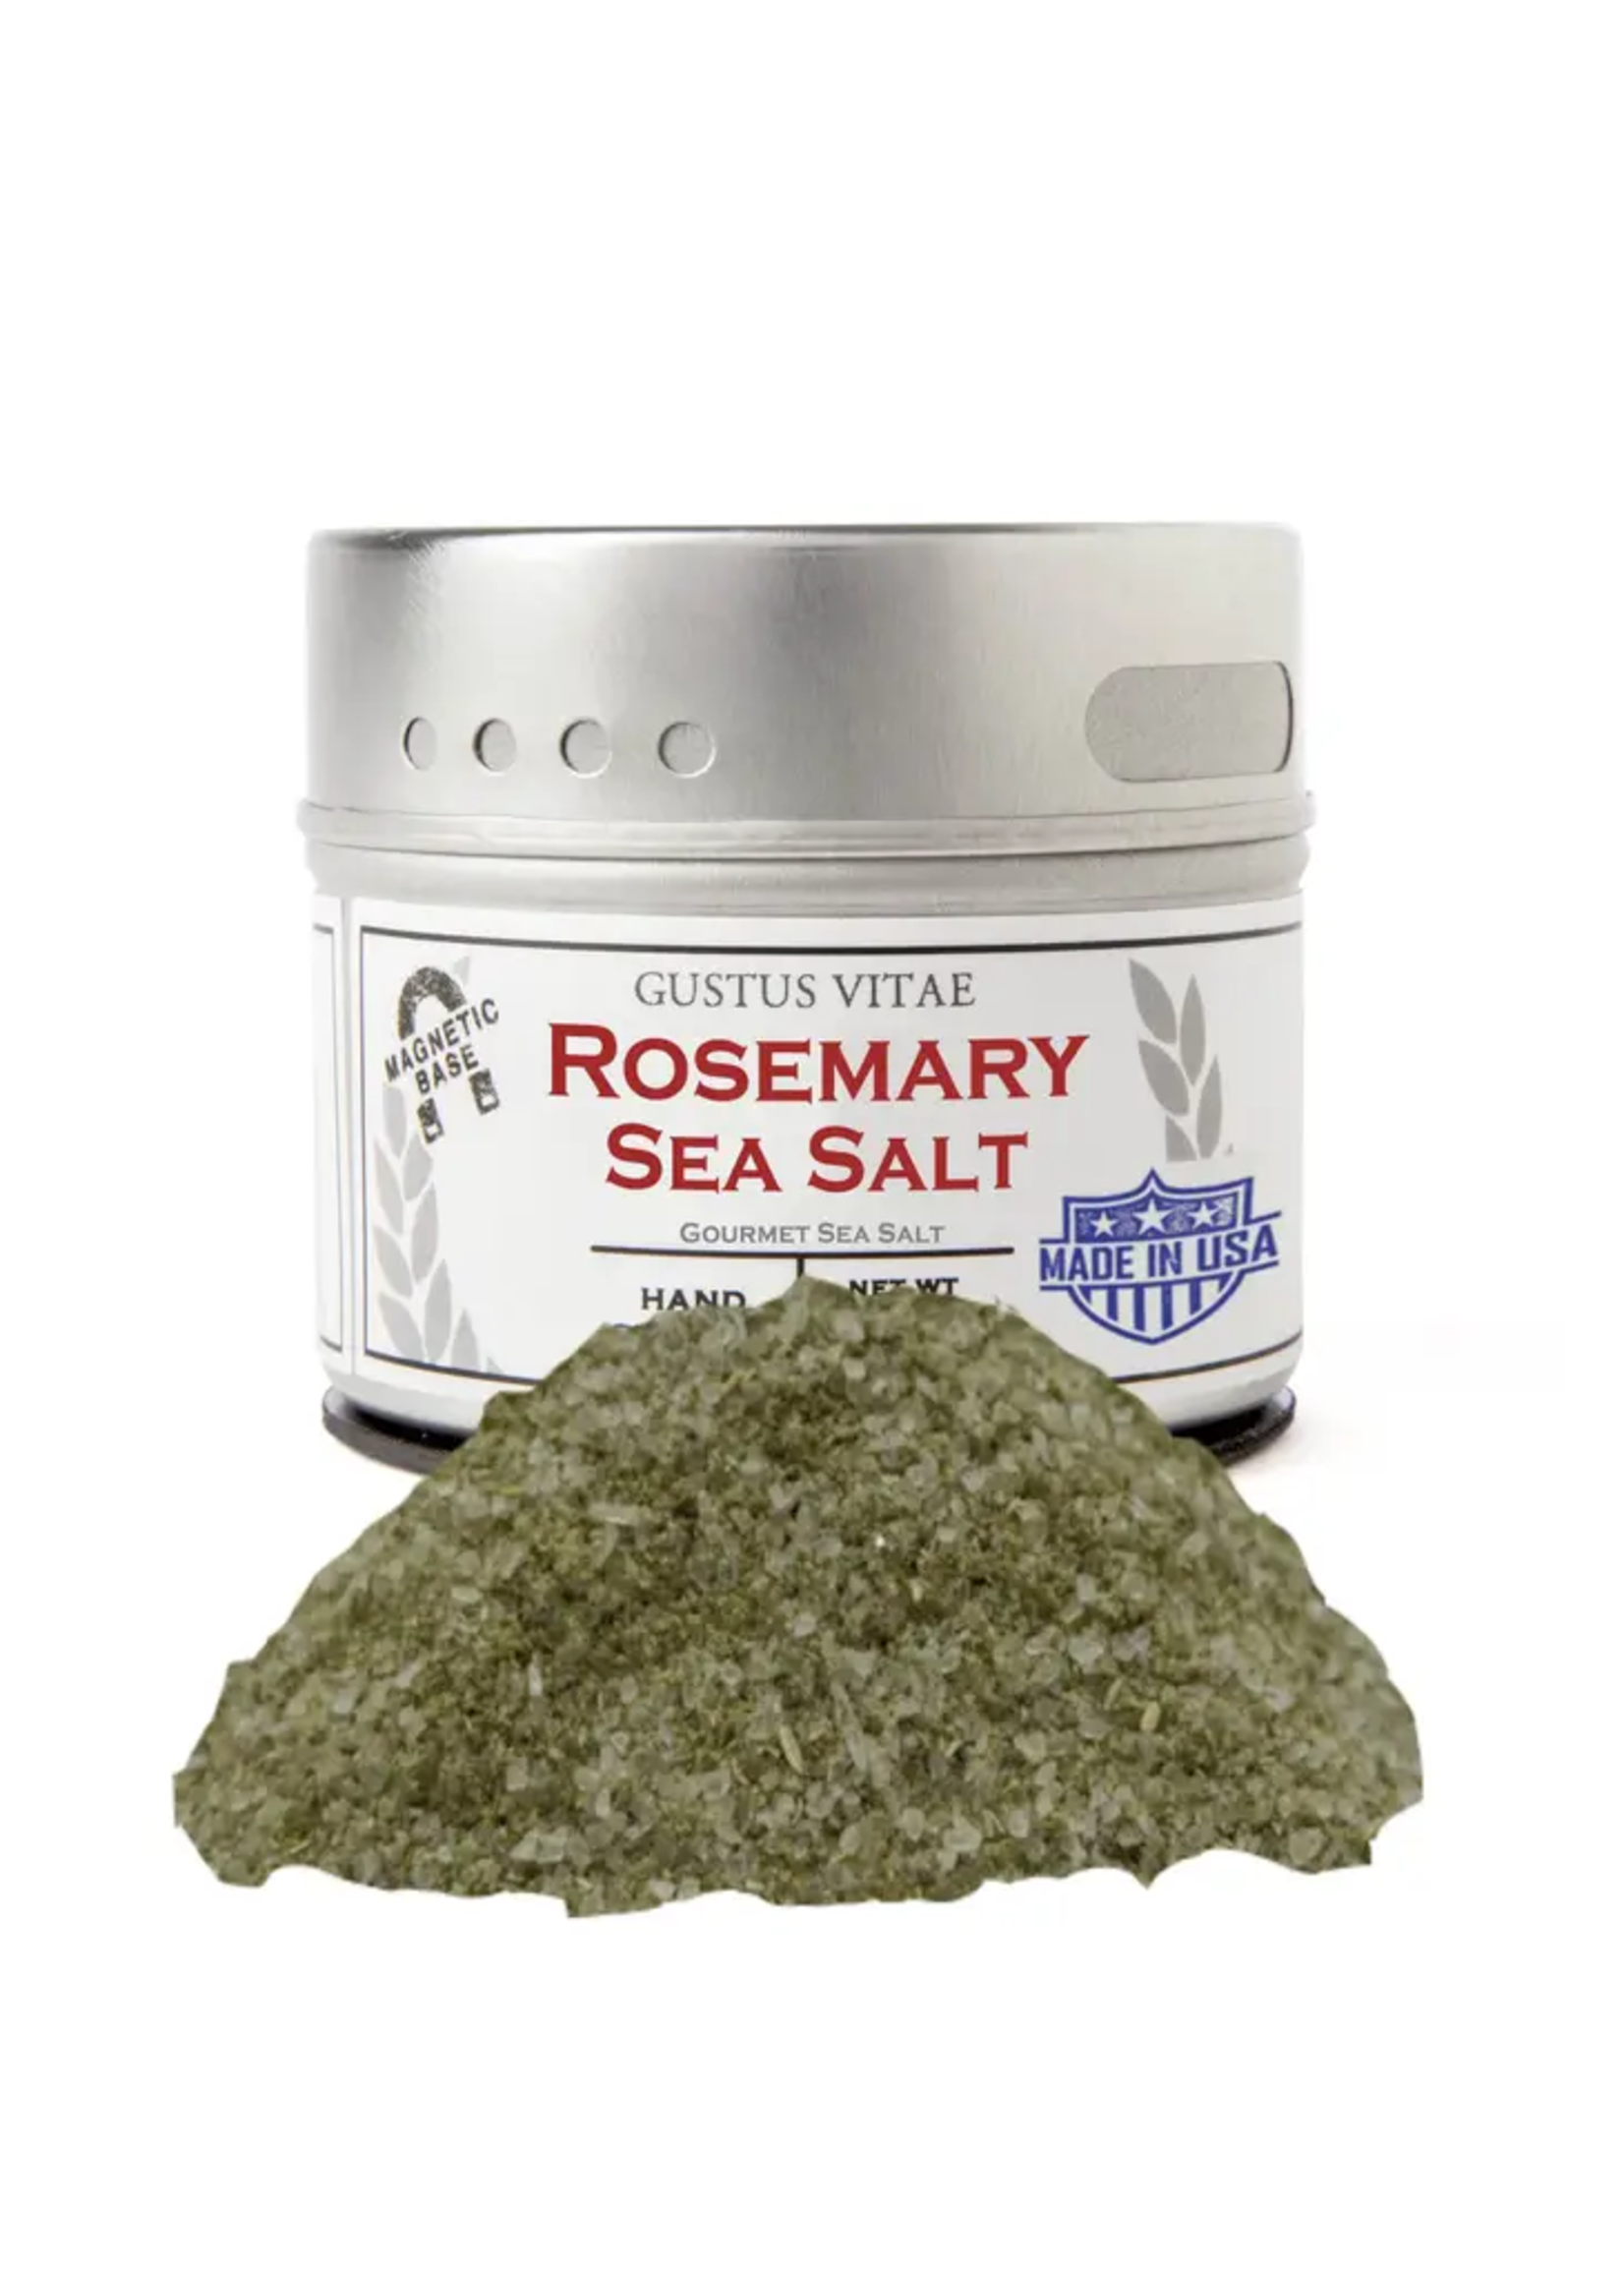 Gustus Vitae Rosemary Sea Salt